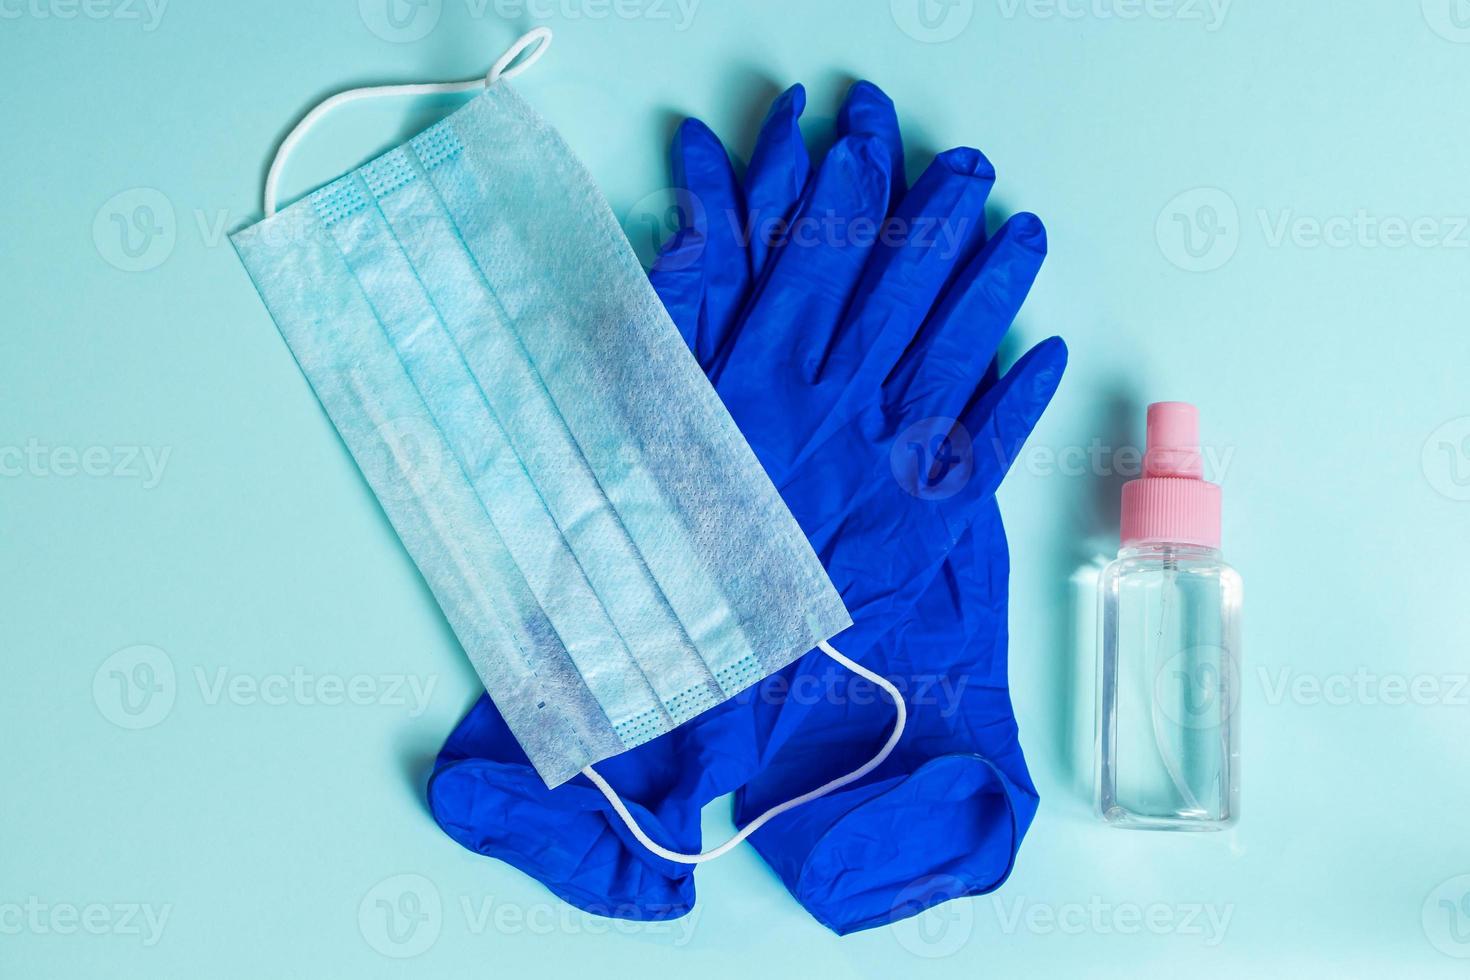 latex handschoenen, medisch gezichtsmasker en antiseptisch middel op een blauwe achtergrond foto